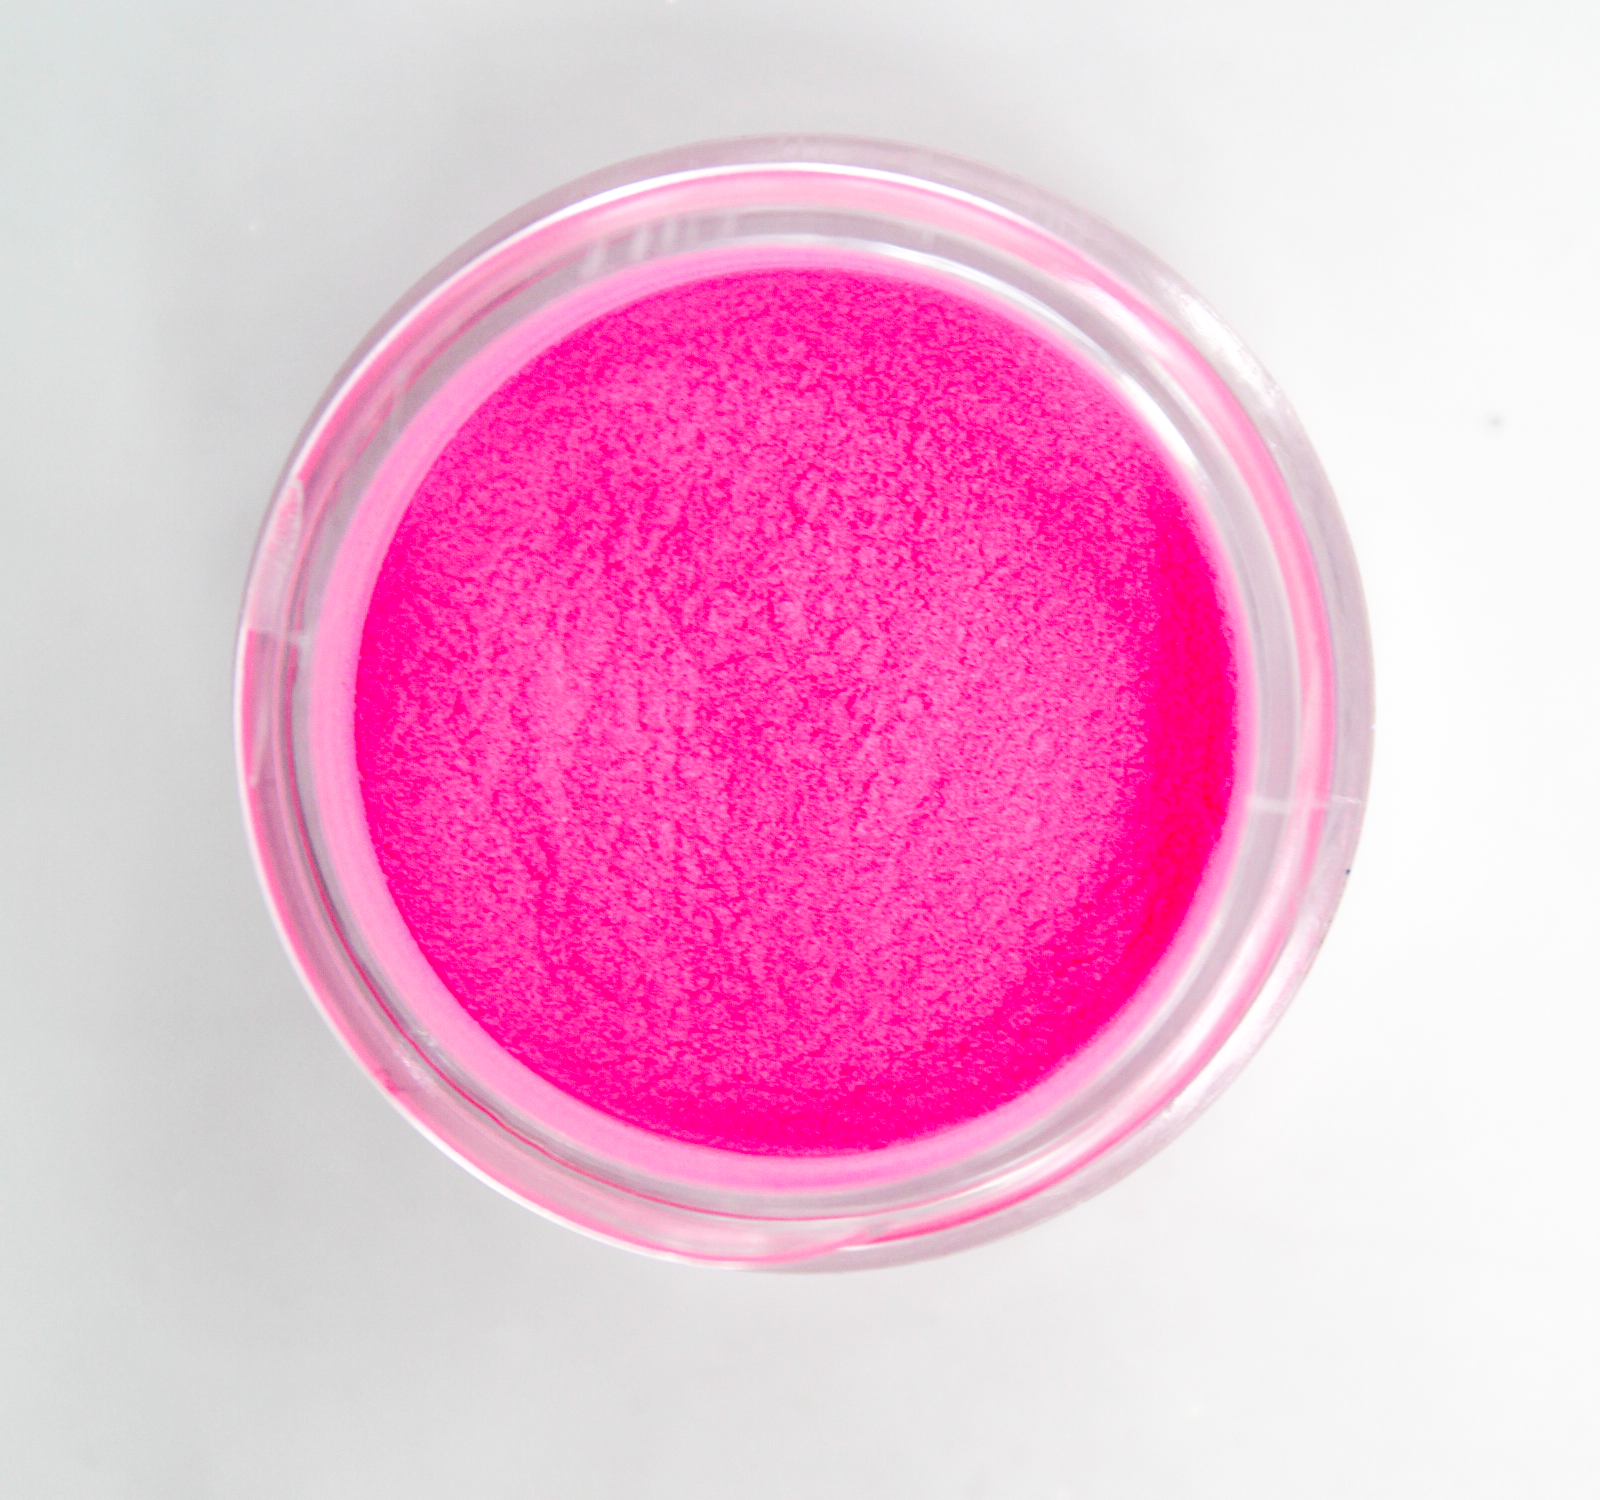 Color Acrylic Powder (Neon Pink)